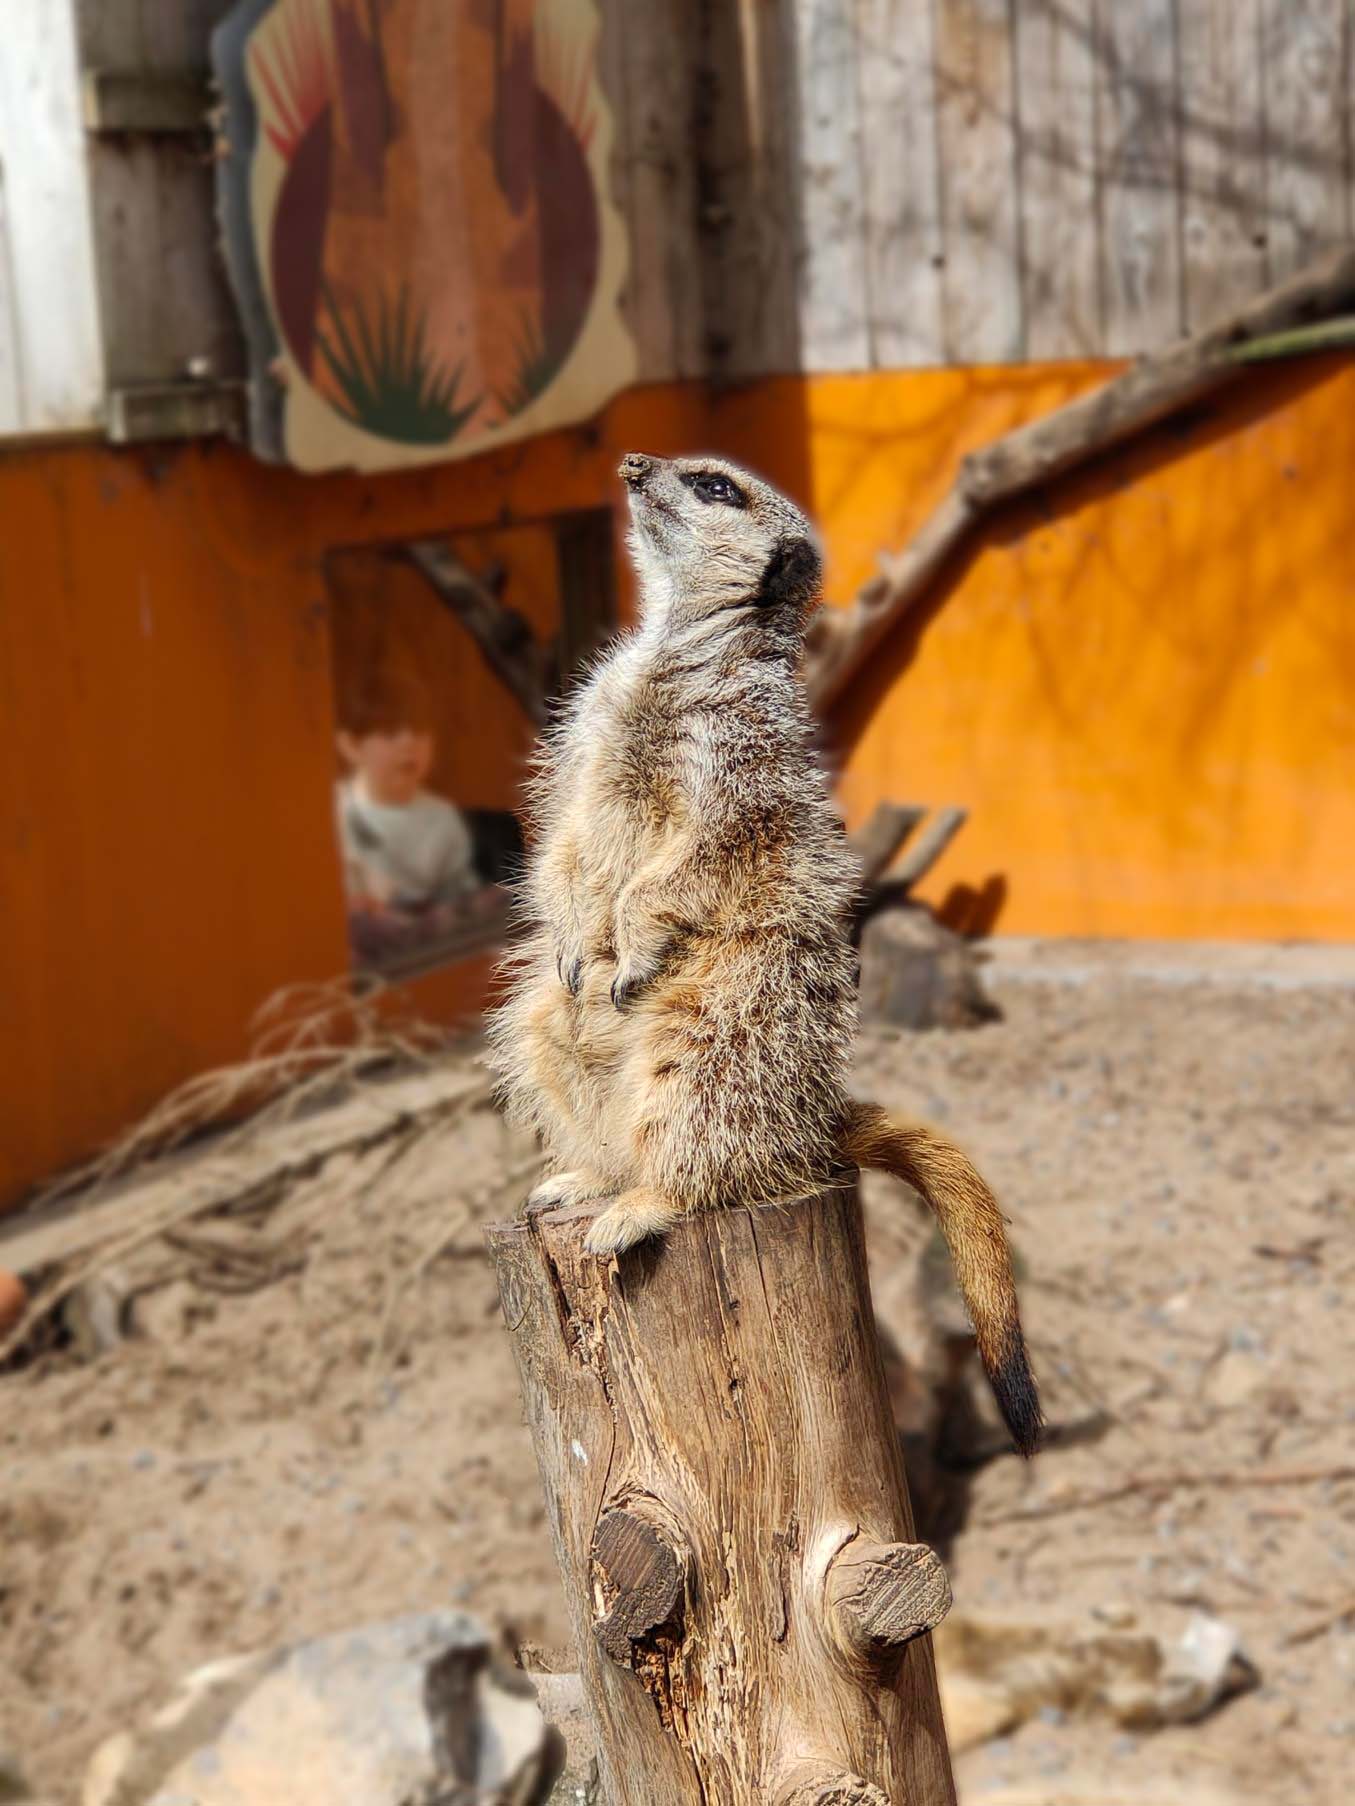 A meerkat standing on a stump.